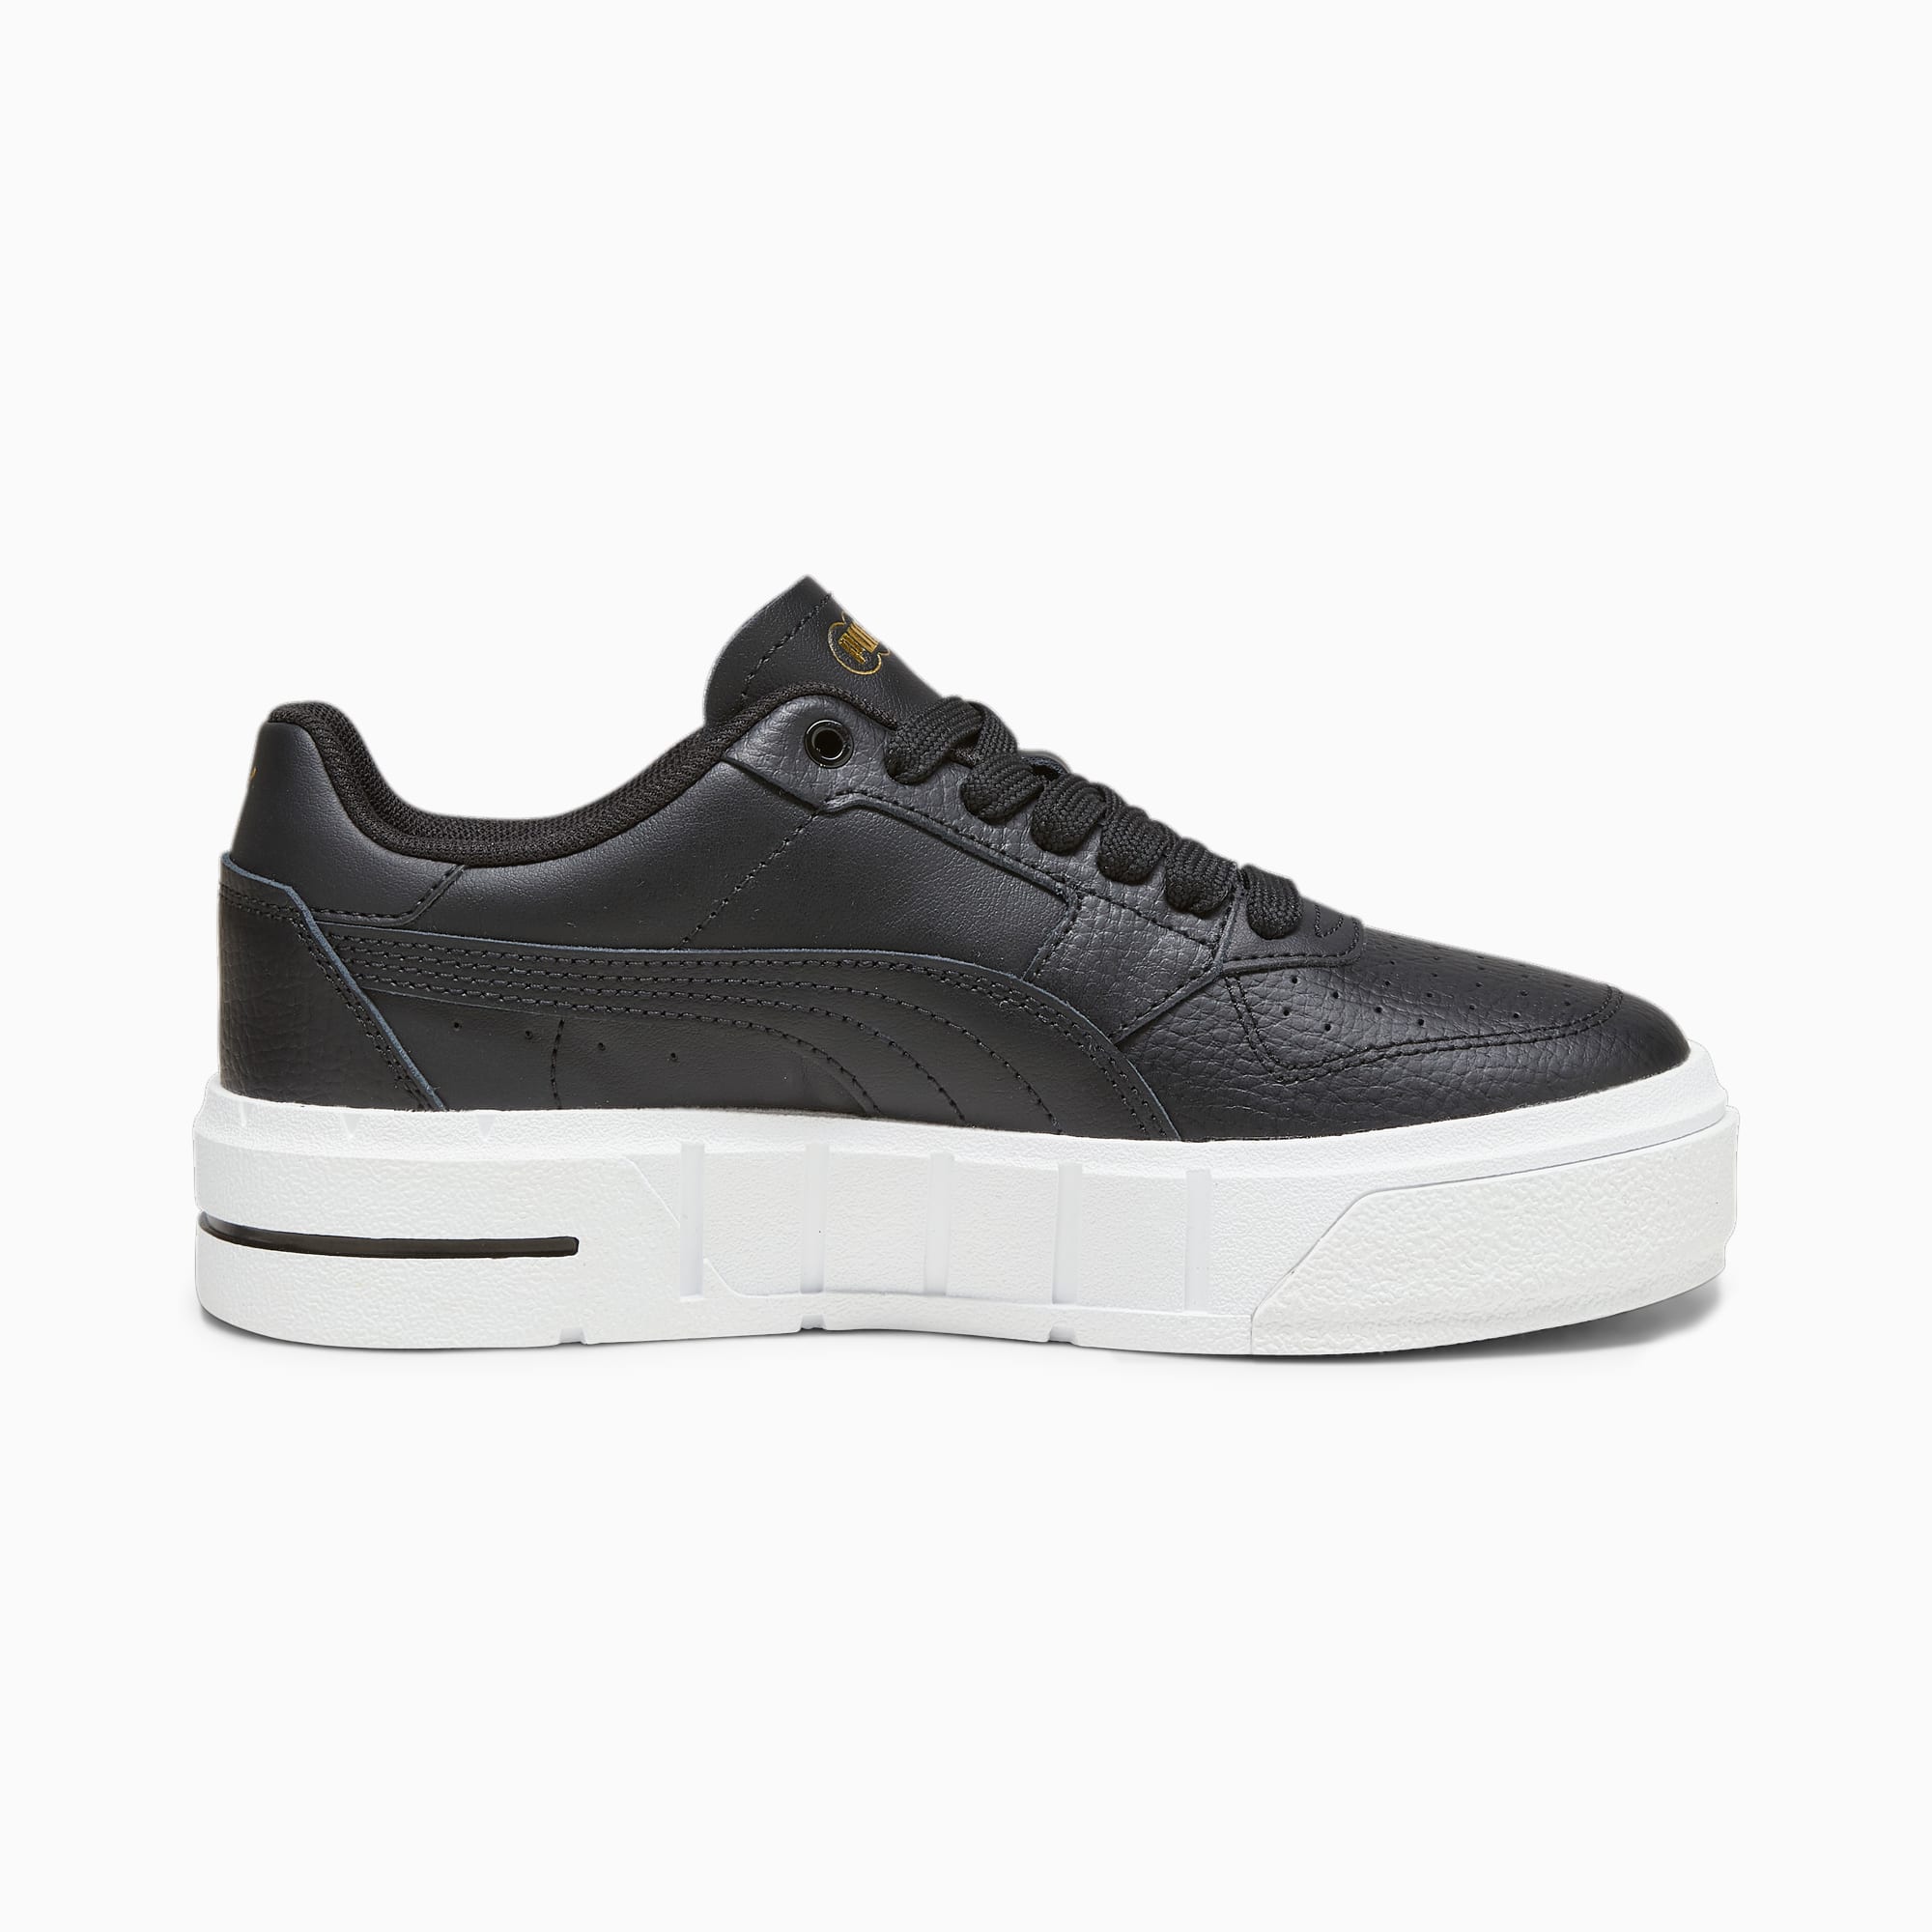 PUMA Cali Court Leder-Sneakers Teenager Schuhe Für Kinder, Schwarz/Weiß, Größe: 36, Schuhe